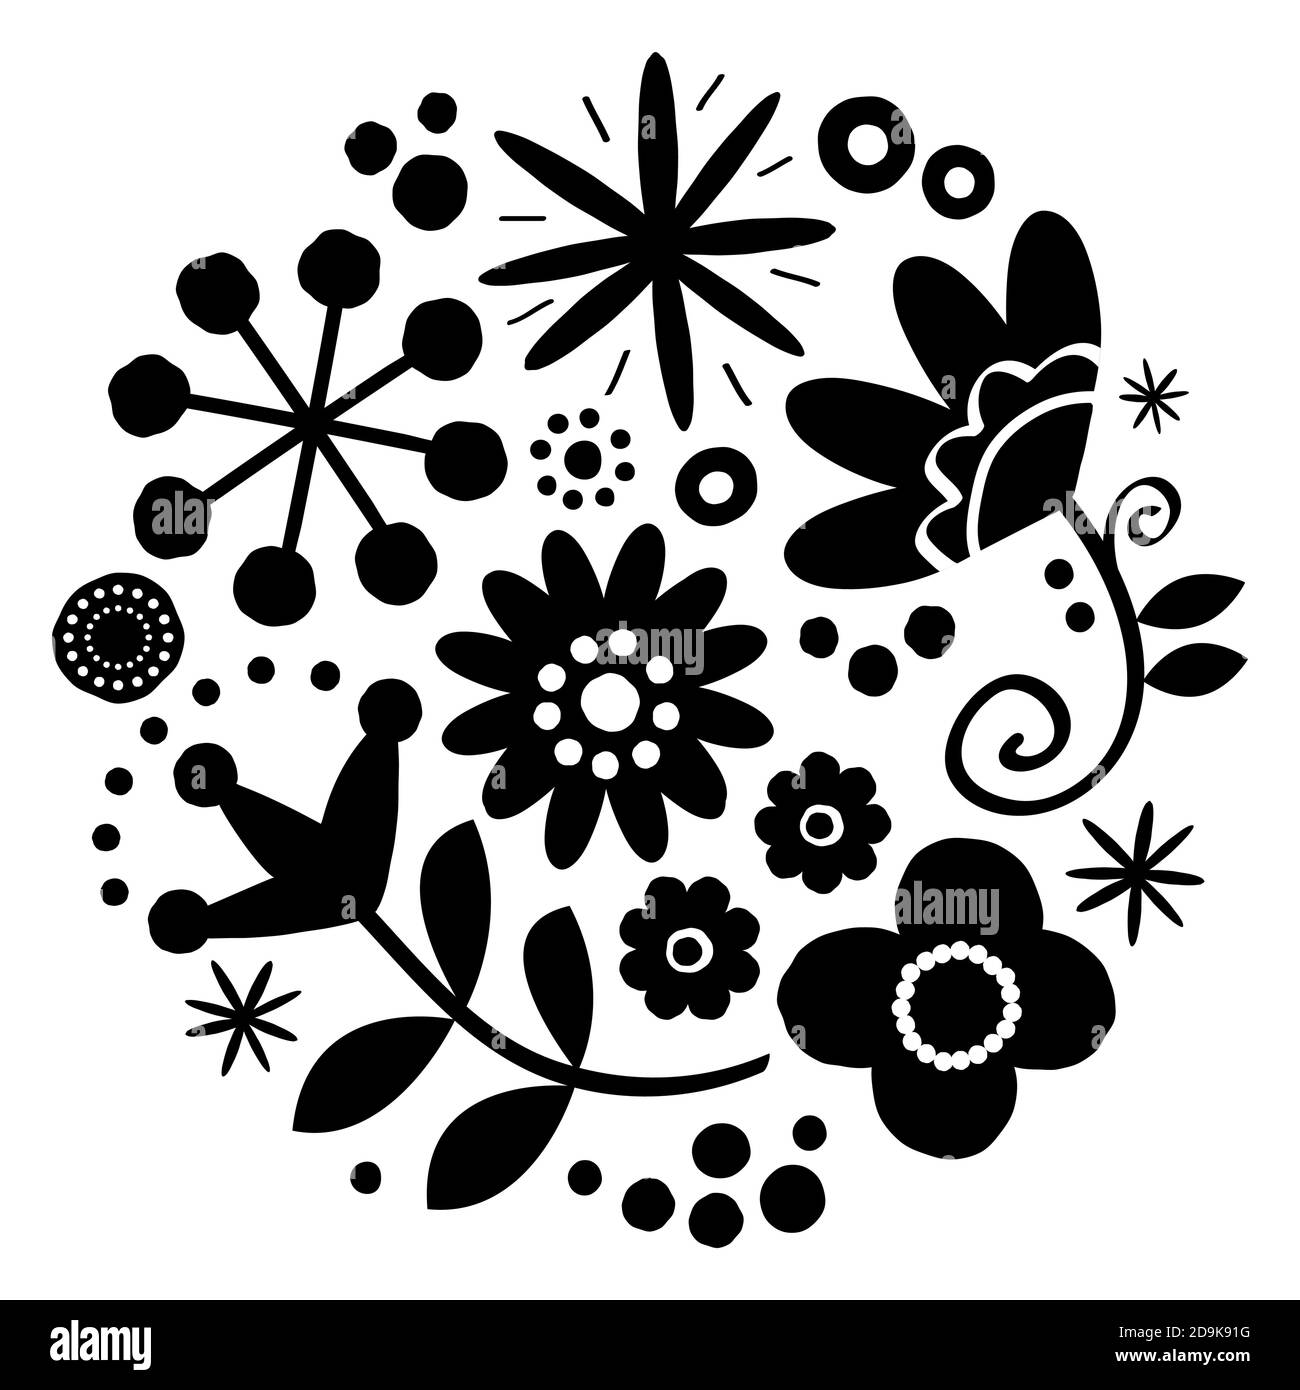 Motif floral folk art vectoriel, motif heureux noir et blanc avec fleurs et coccinelle - carte de vœux scandinave ou invitation, style dessiné à la main Illustration de Vecteur